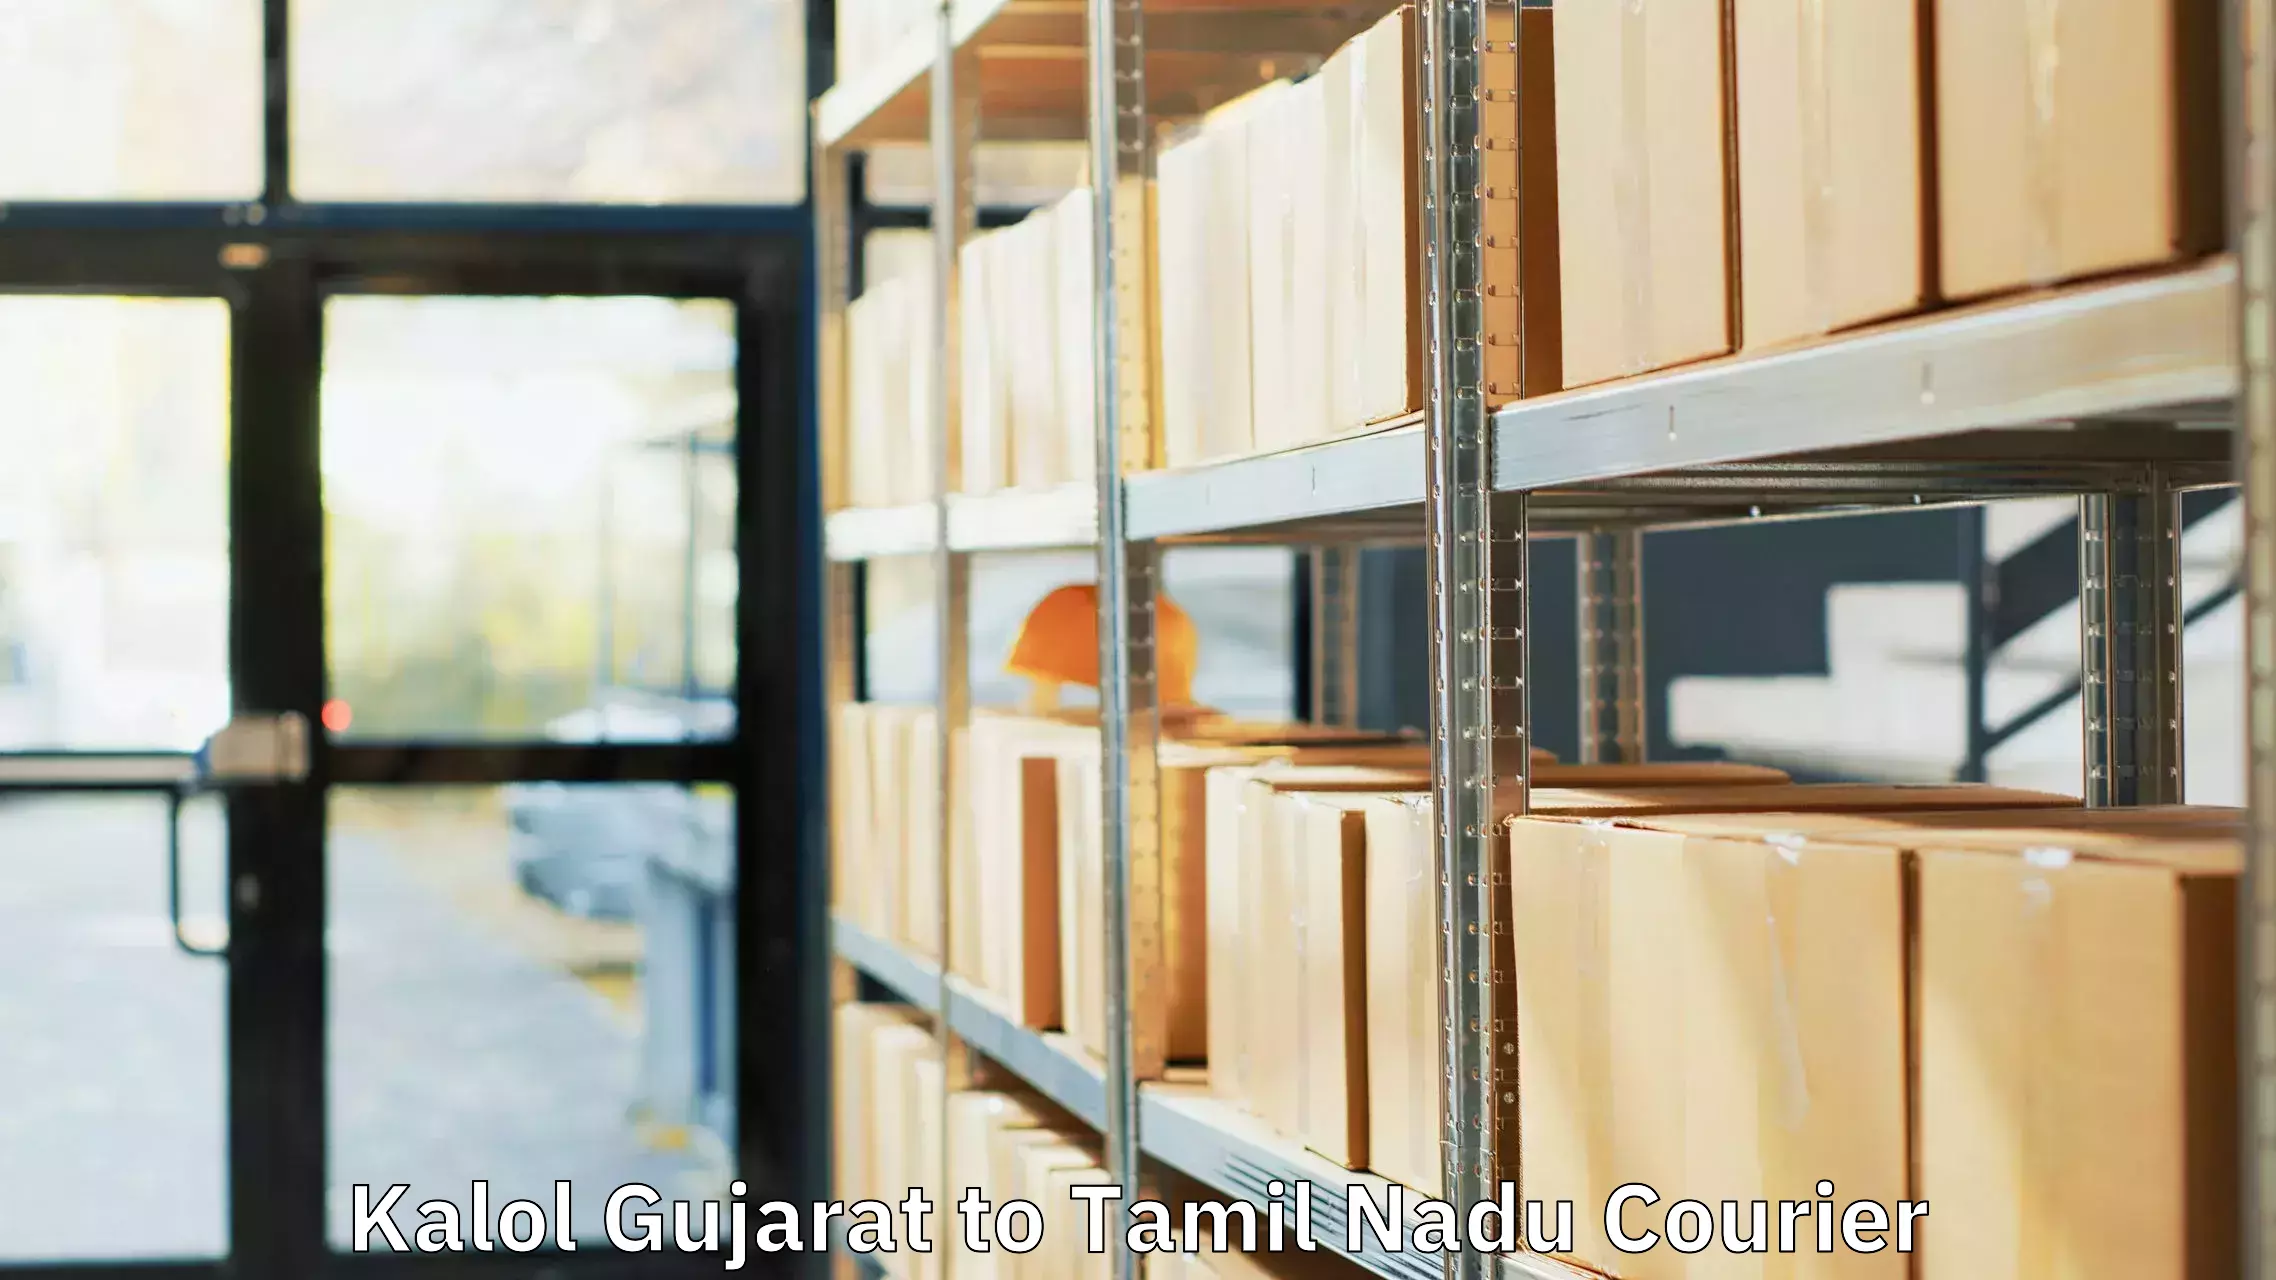 Luggage transport deals Kalol Gujarat to Perunali